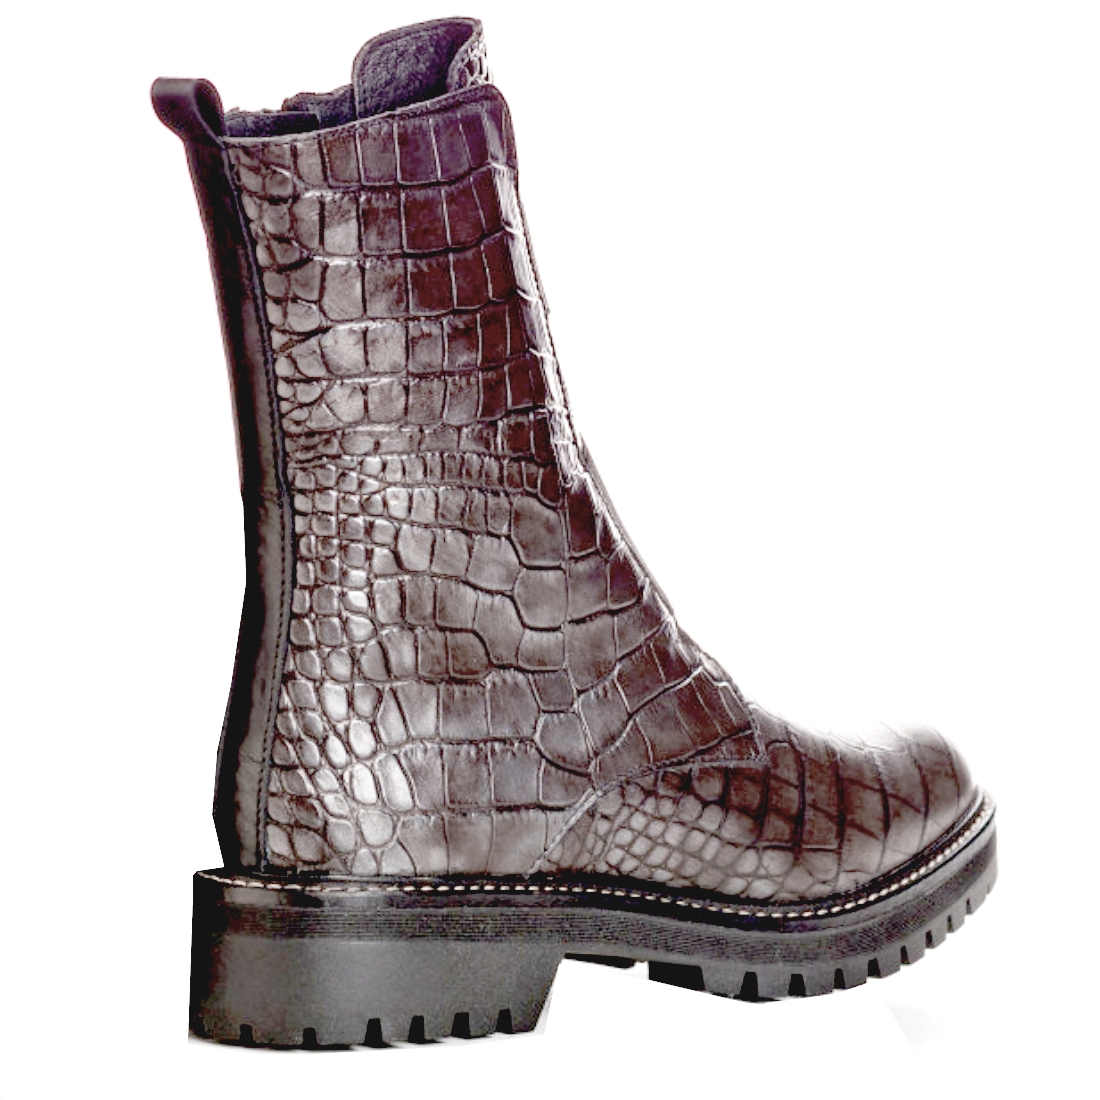 Boots Montantes Femme Gris de REQINS modèle Dusky-Alligator  MINI PRIX